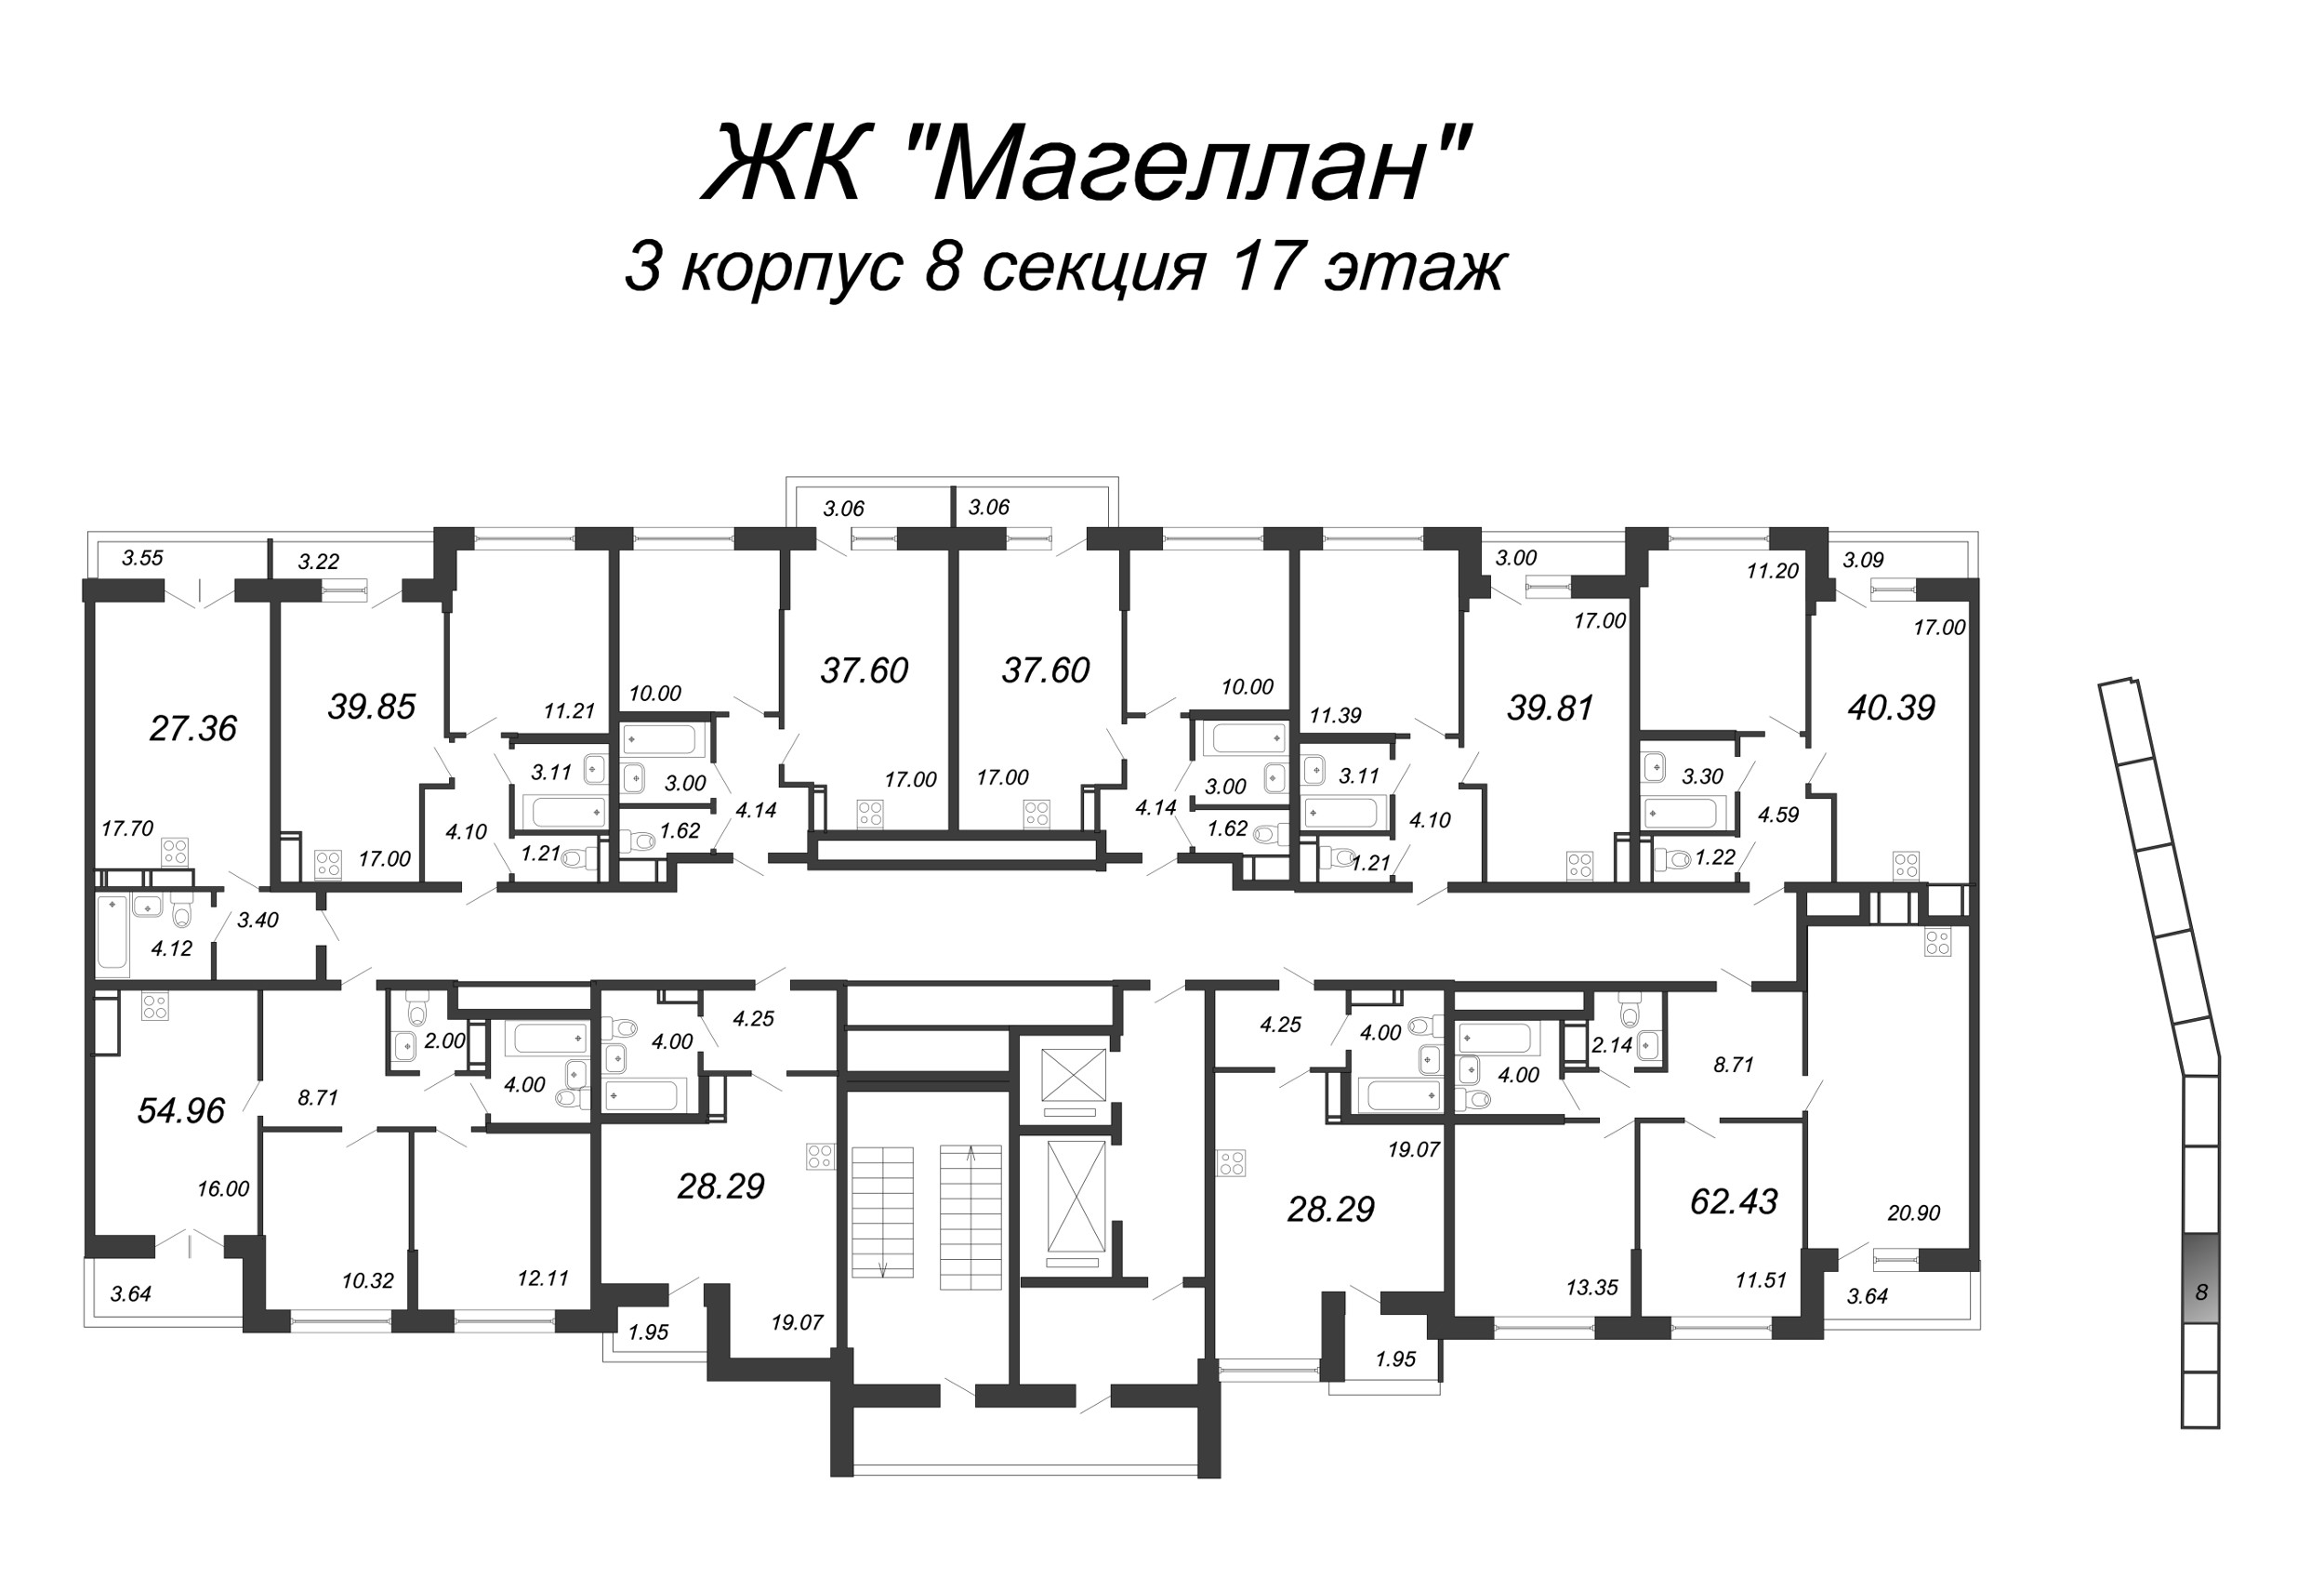 3-комнатная (Евро) квартира, 55.9 м² в ЖК "Магеллан" - планировка этажа